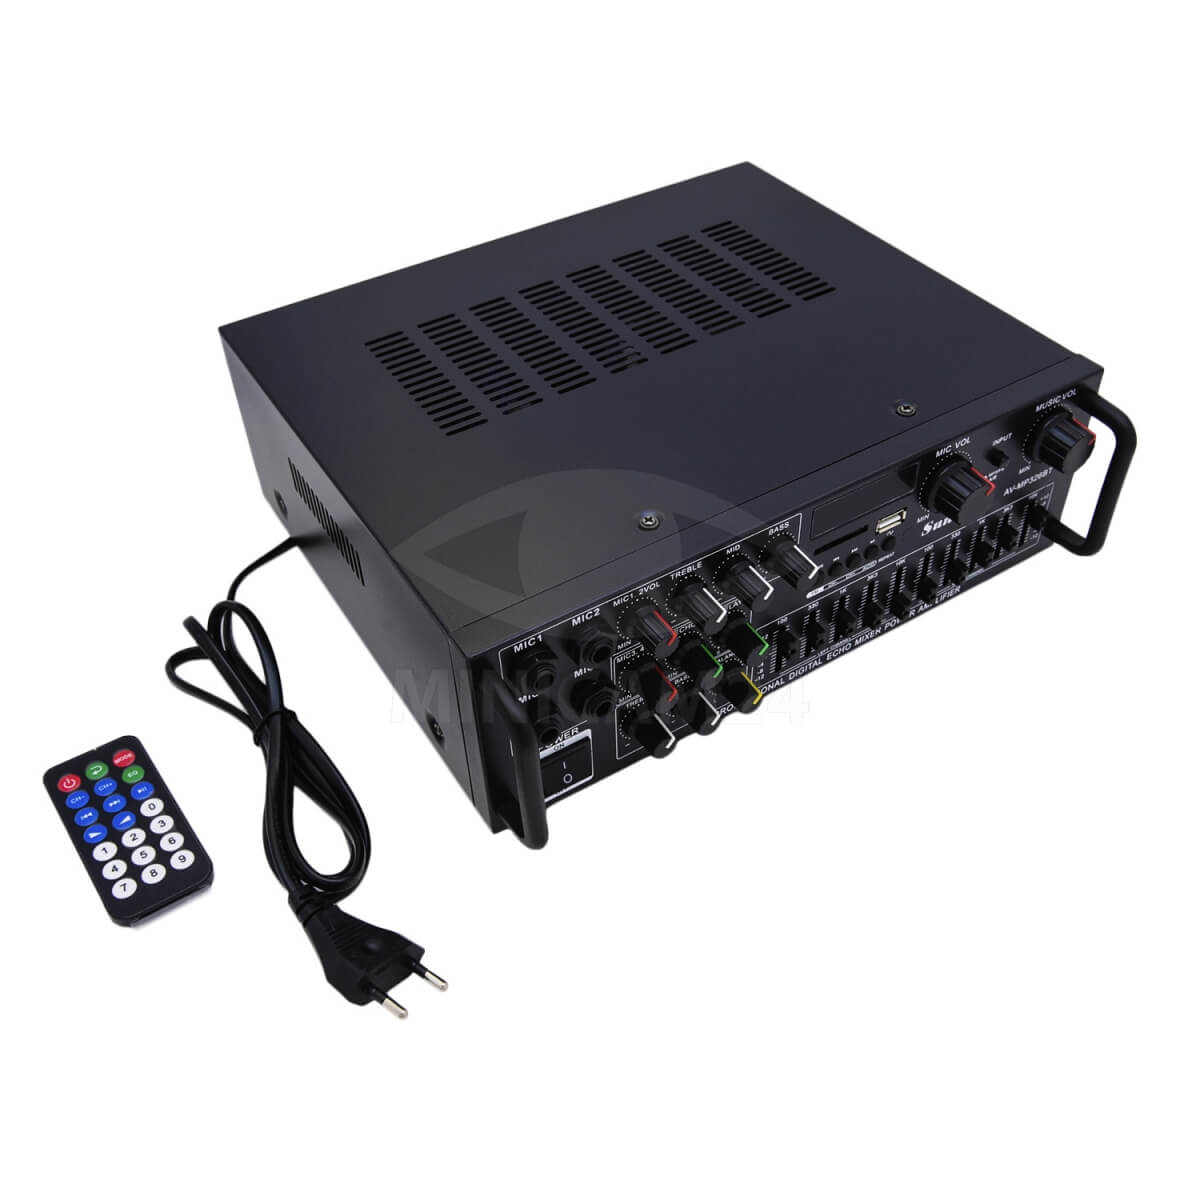 Unboxing Power Amplifier fleco av - mp326bt fitur Bluetooth Karaoke Sunbuck. Sunbuck av-mp326bt схема плат. Sunbuck av-mp326bt цена. Электронные схемы на бумаге для усилитель Sunbuck av-mp326bt. Sunbuck av mp326bt